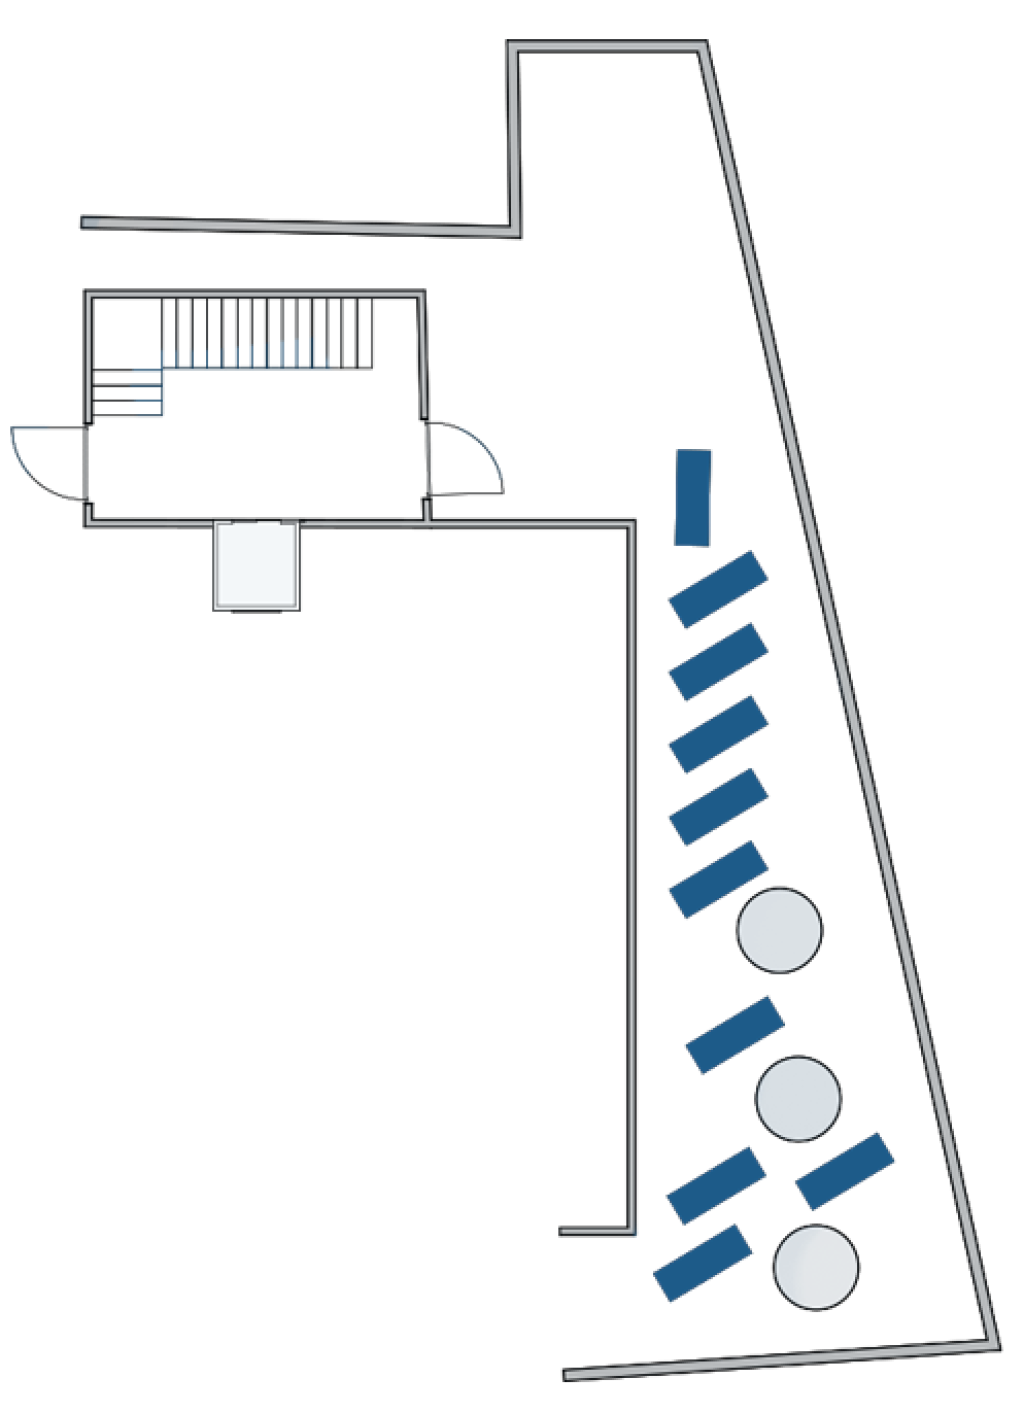 Plan der Dachterrasse Mandalahof für Outdoor-Yoga.